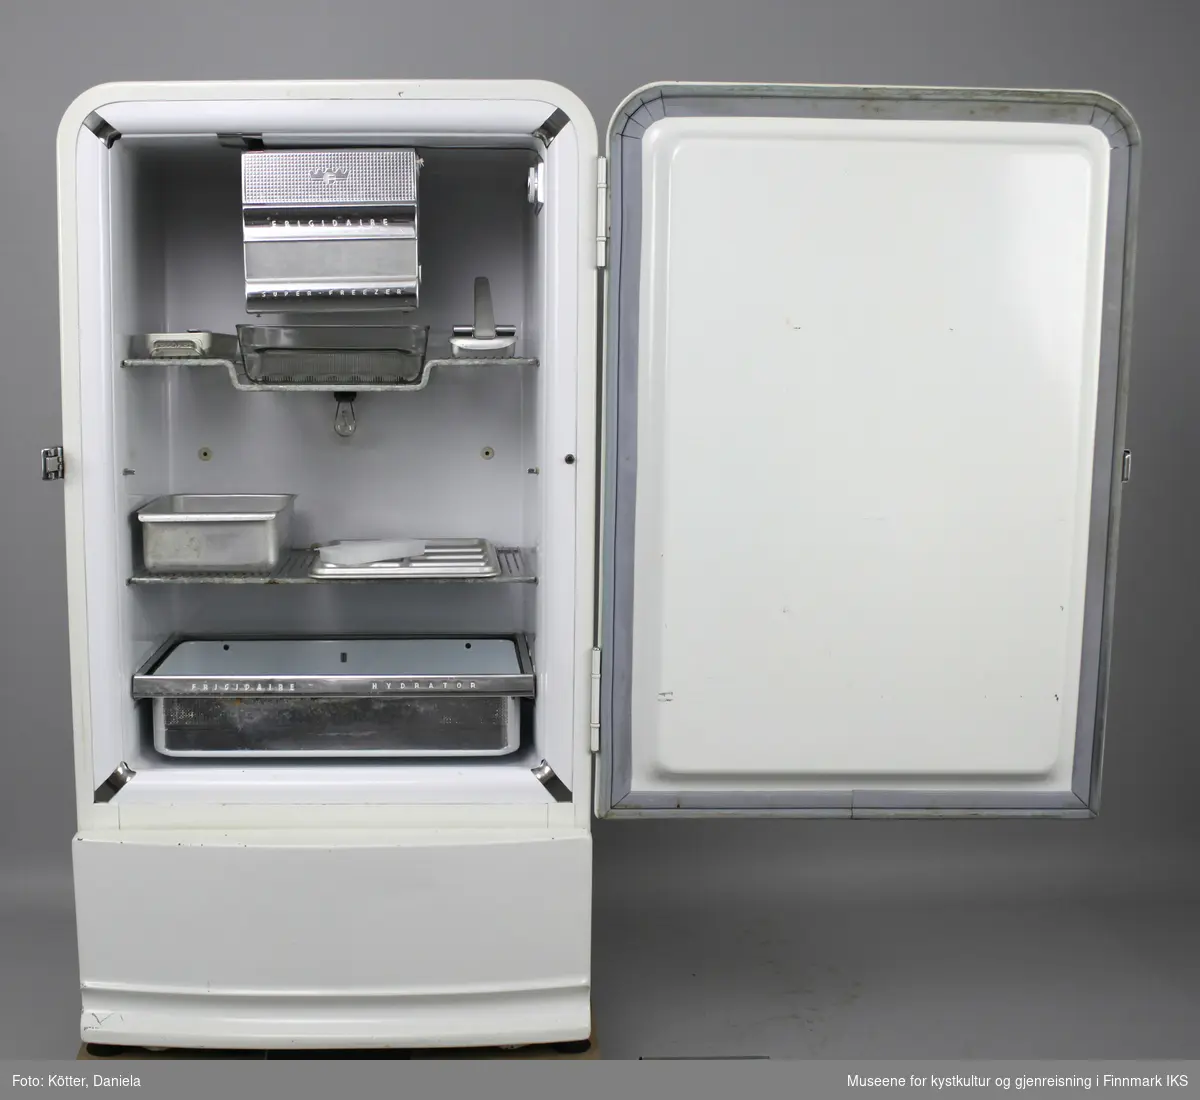 Kjøleskapet er hvit emaljert og har avrundede hjørner. Innvendig finner man et frysefag med dør øverst. Under det er det en gitterbunn med et rektangulær form av glass. Det er i tillegg en til gitterbunn i dette kjøleskapet, samt en uttrekkbar skuffe nederst. Det følger videre med tre isbitformer i aluminium og en i hvit-gjennomsiktig plast, samt en kasse og et brett i aluminium. Brettet har en inndeling i 8 felt. Kjøleskapet har en innvendig belysning med en lyspære i en E27 sokkel.